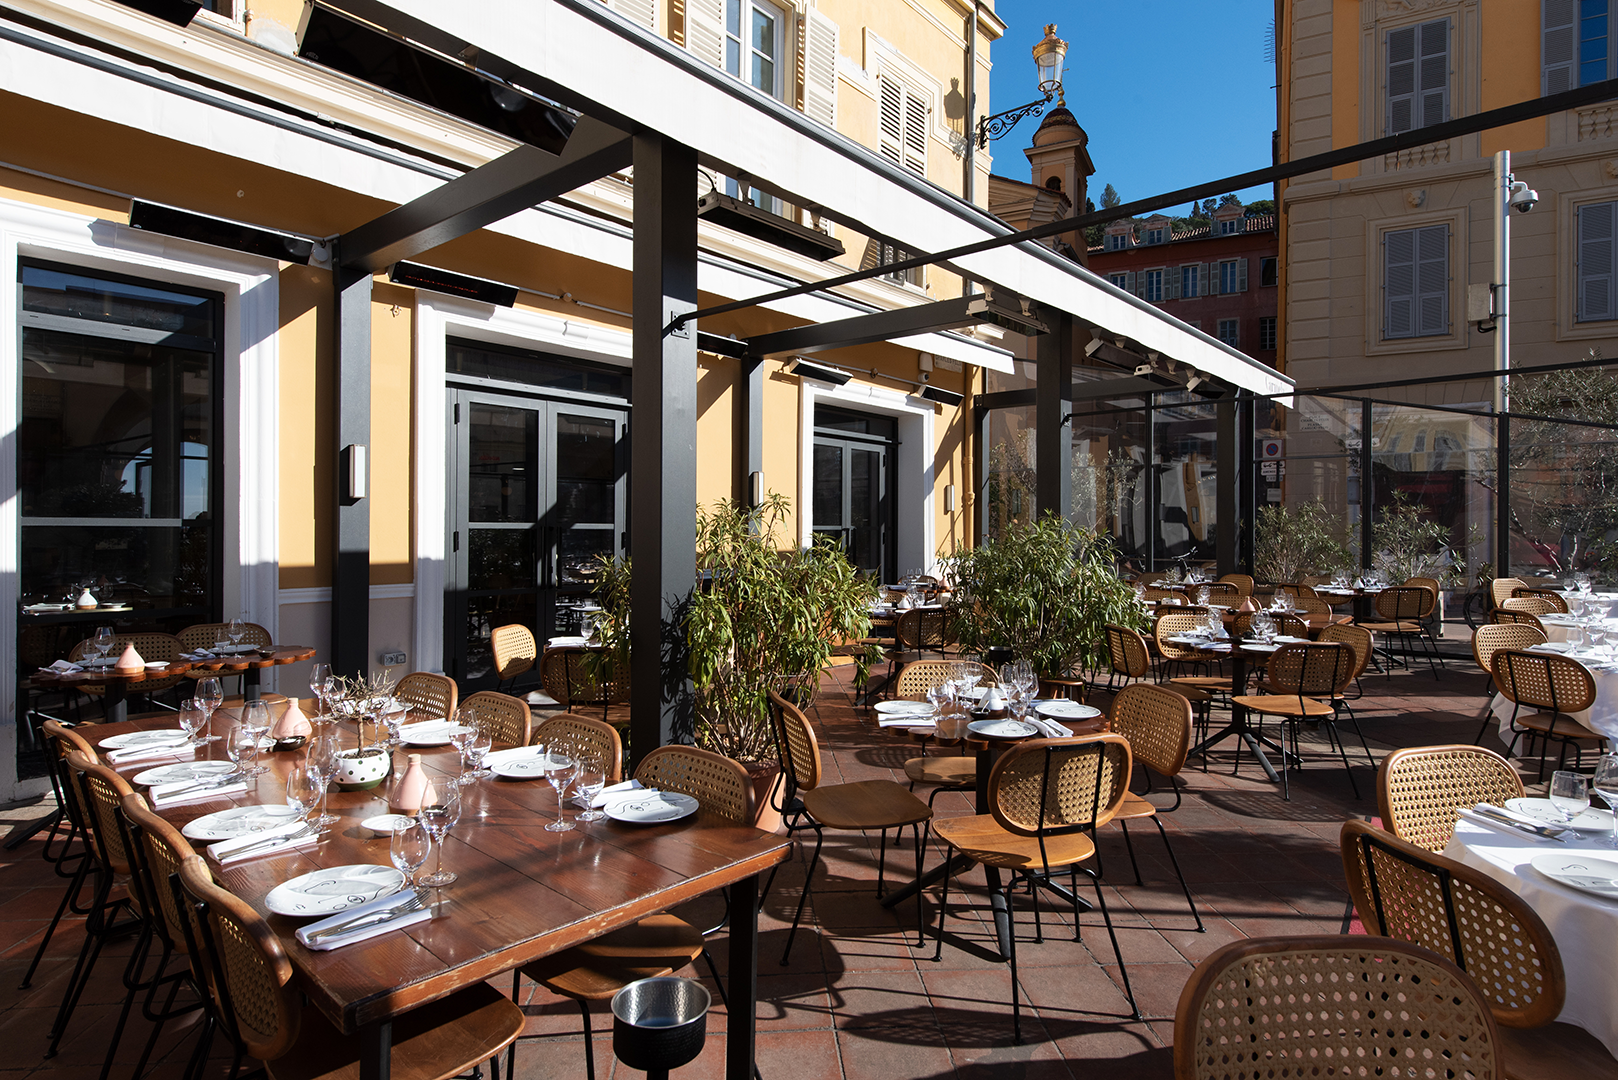 Découvrez le restaurant Carmela dans le Vieux Nice